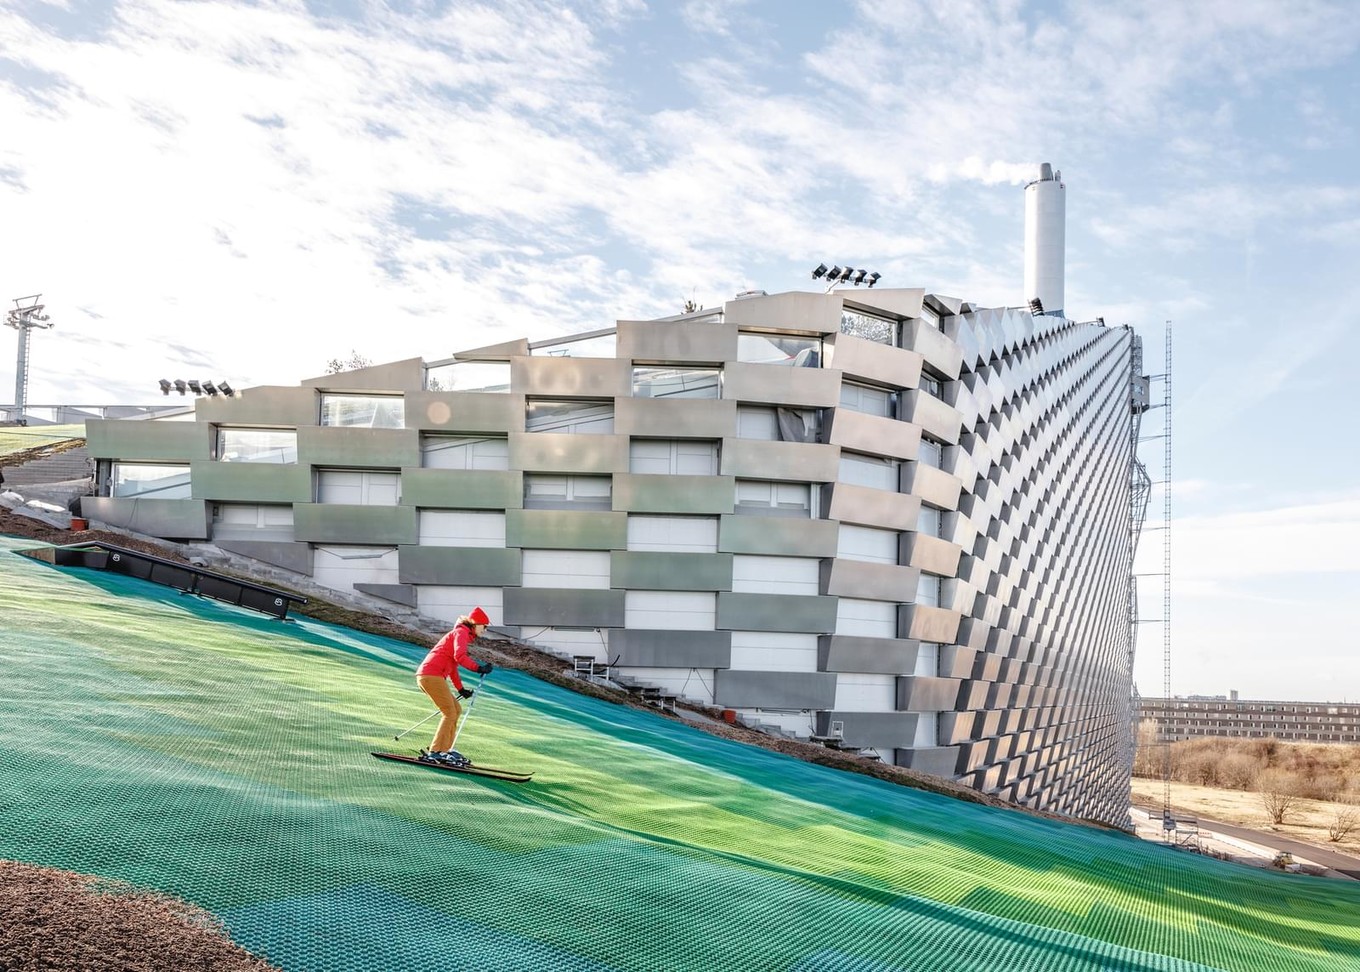 Завод по переработке отходов в энергию с развлекательной инфраструктурой в Копенгагене